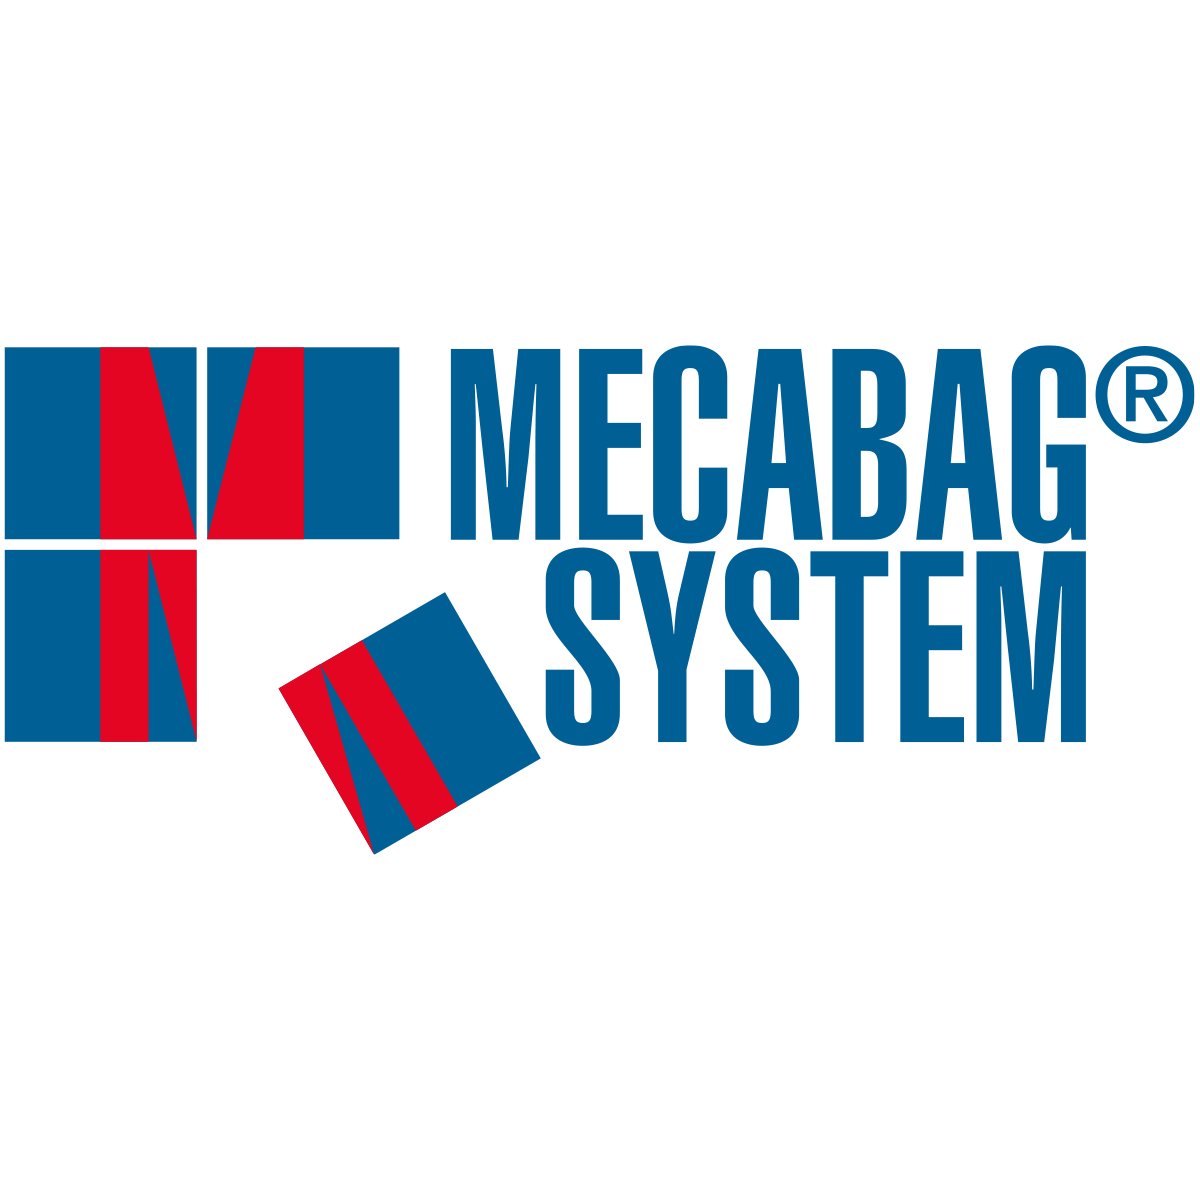 MECABAG SYSTEM